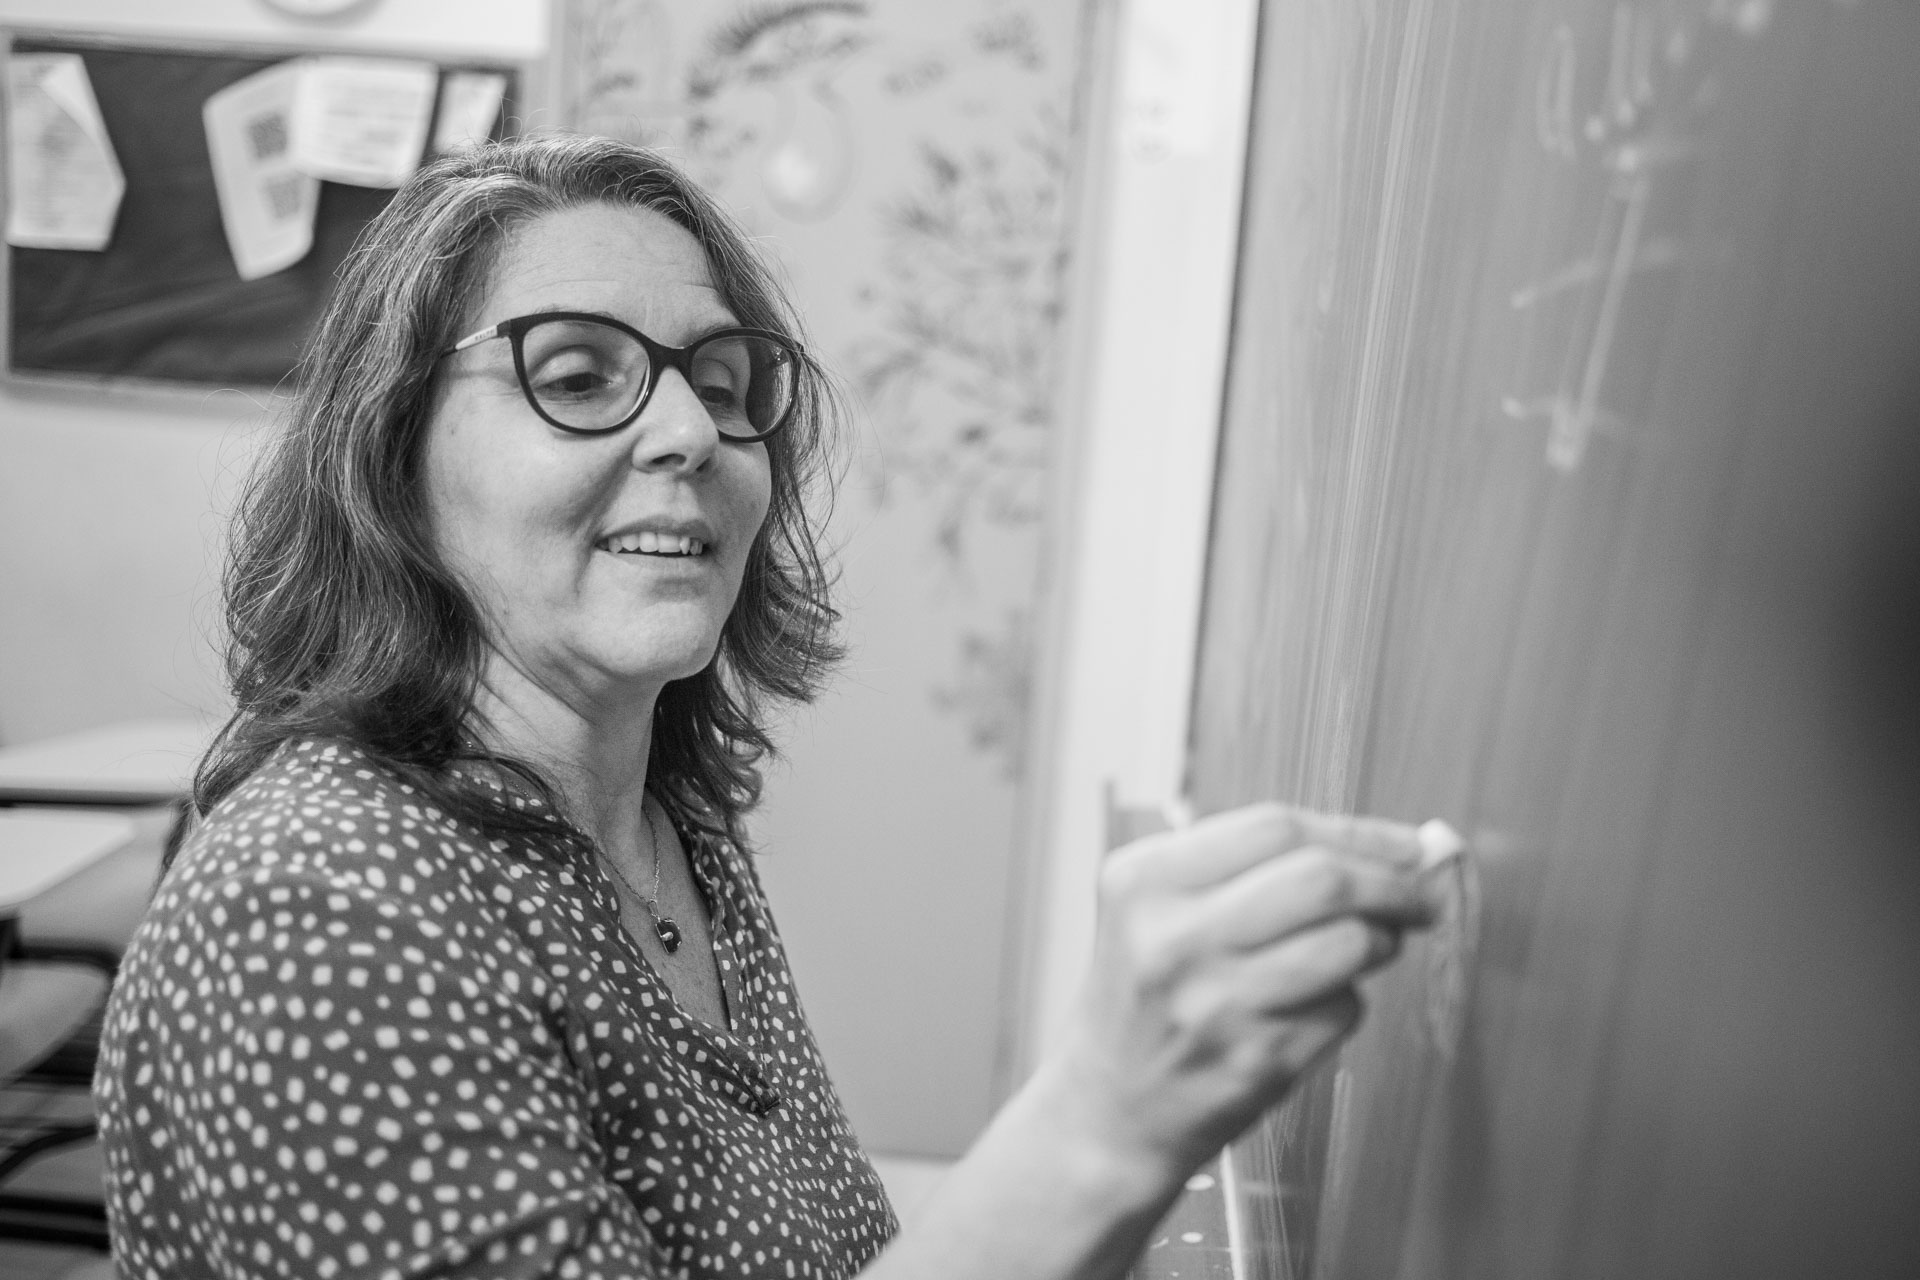 Foto em preto e branco de professora escrevendo com giz em quadro negro. Ela está sorrindo e tem cabelos lisos soltos até a altura dos ombros.